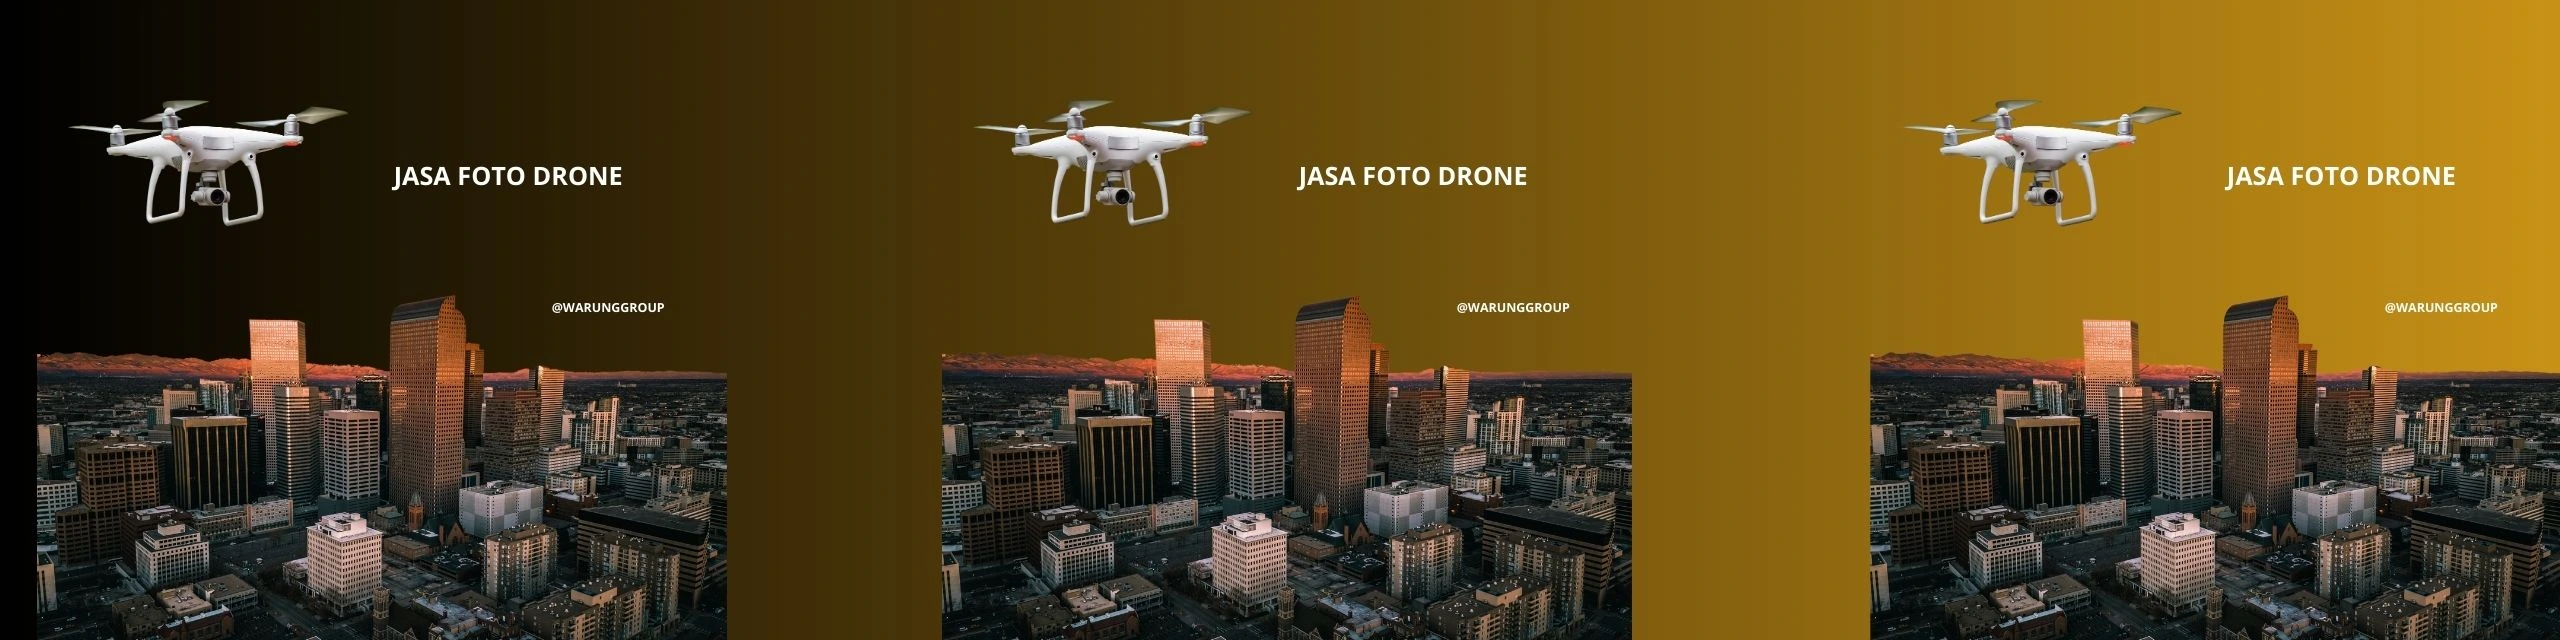 Jasa Foto Drone